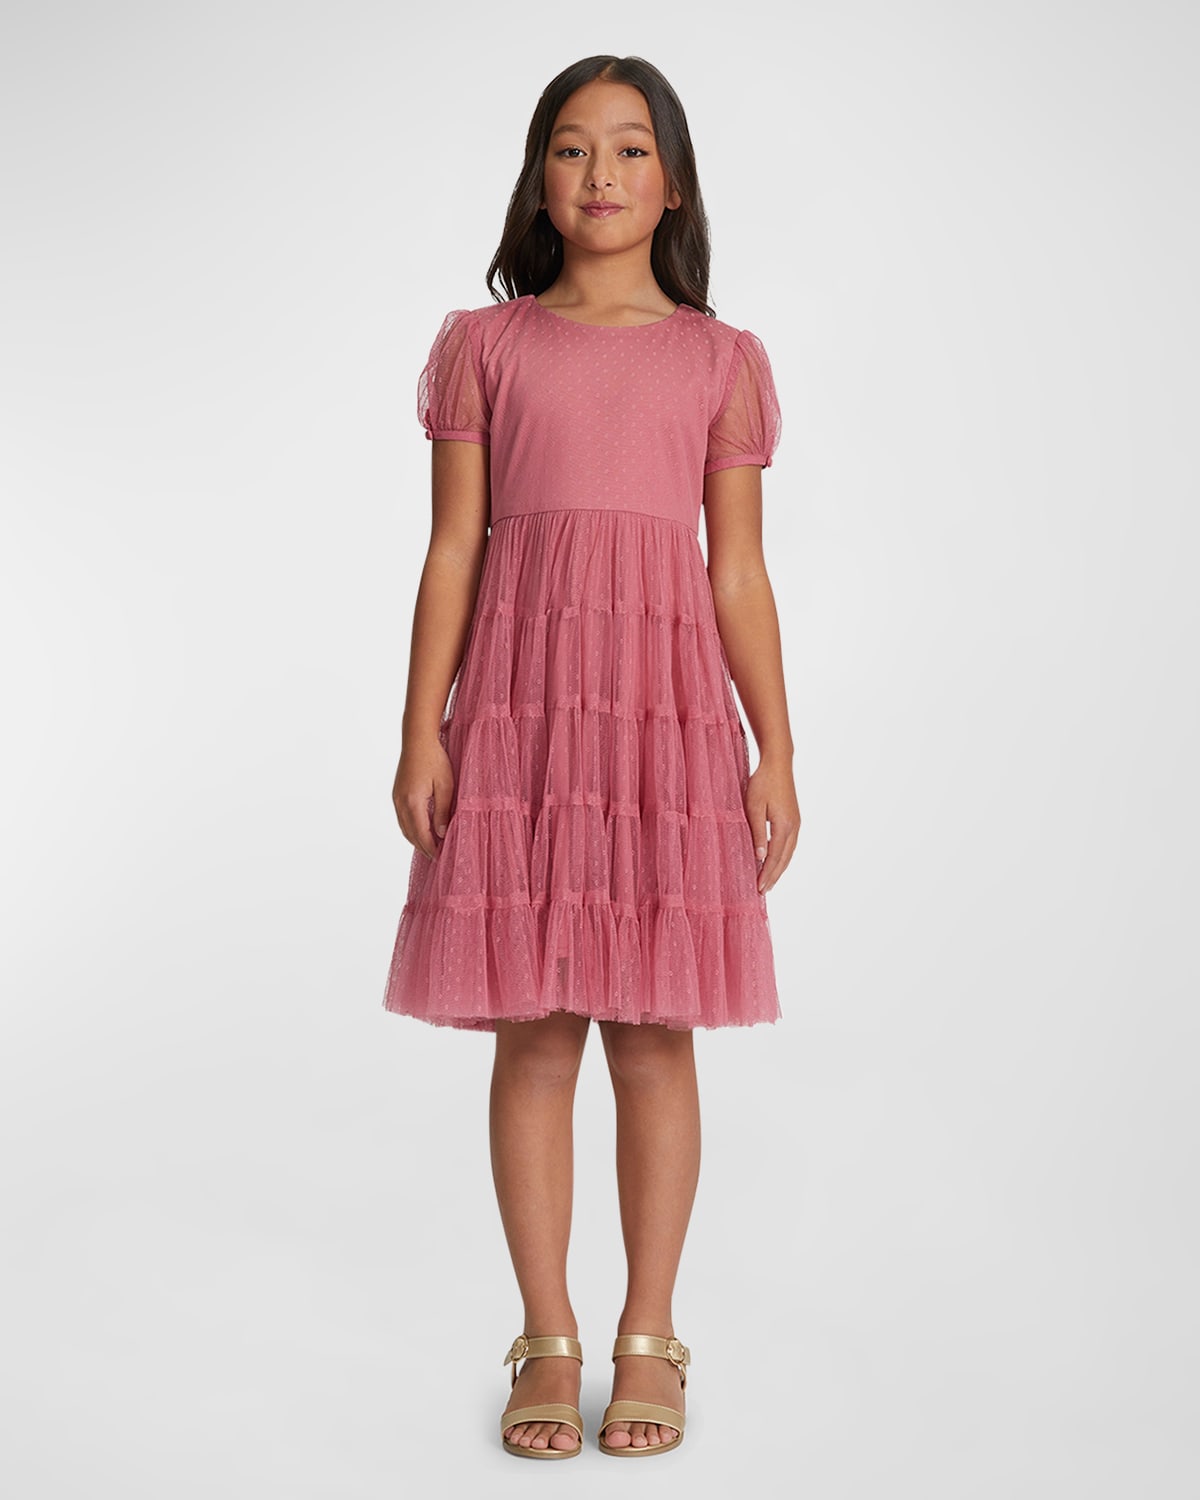 Bardot Junior Kids' Girl's Lydia Mesh Dress In Blush Pink